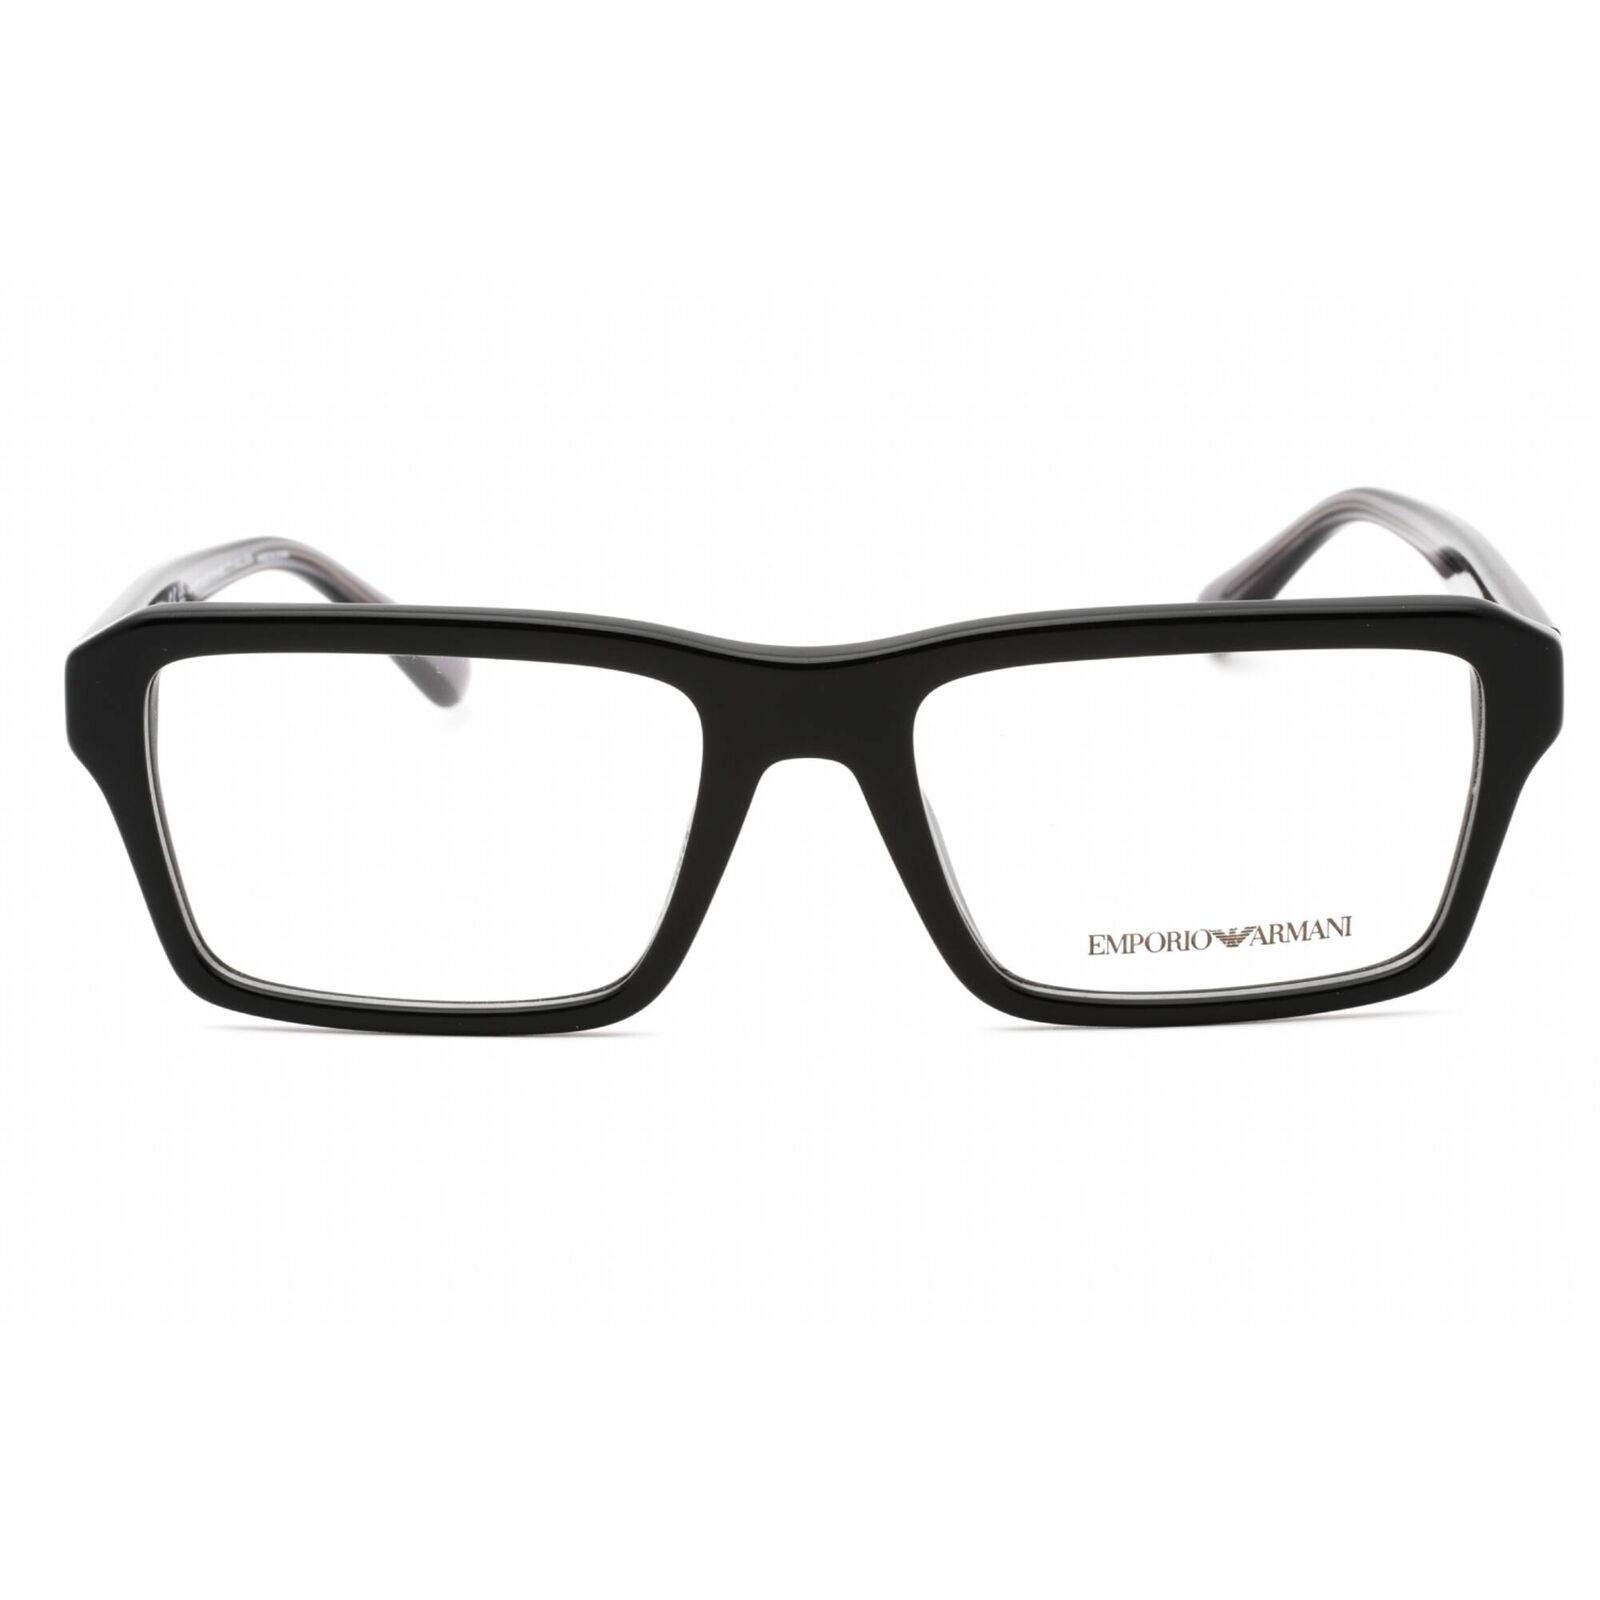 Emporio Armani Men's Eyeglasses Shiny Black Plastic Full Rim Frame 0EA3206 5017 Emporio Armani 0EA3206 5017 - фотография #2